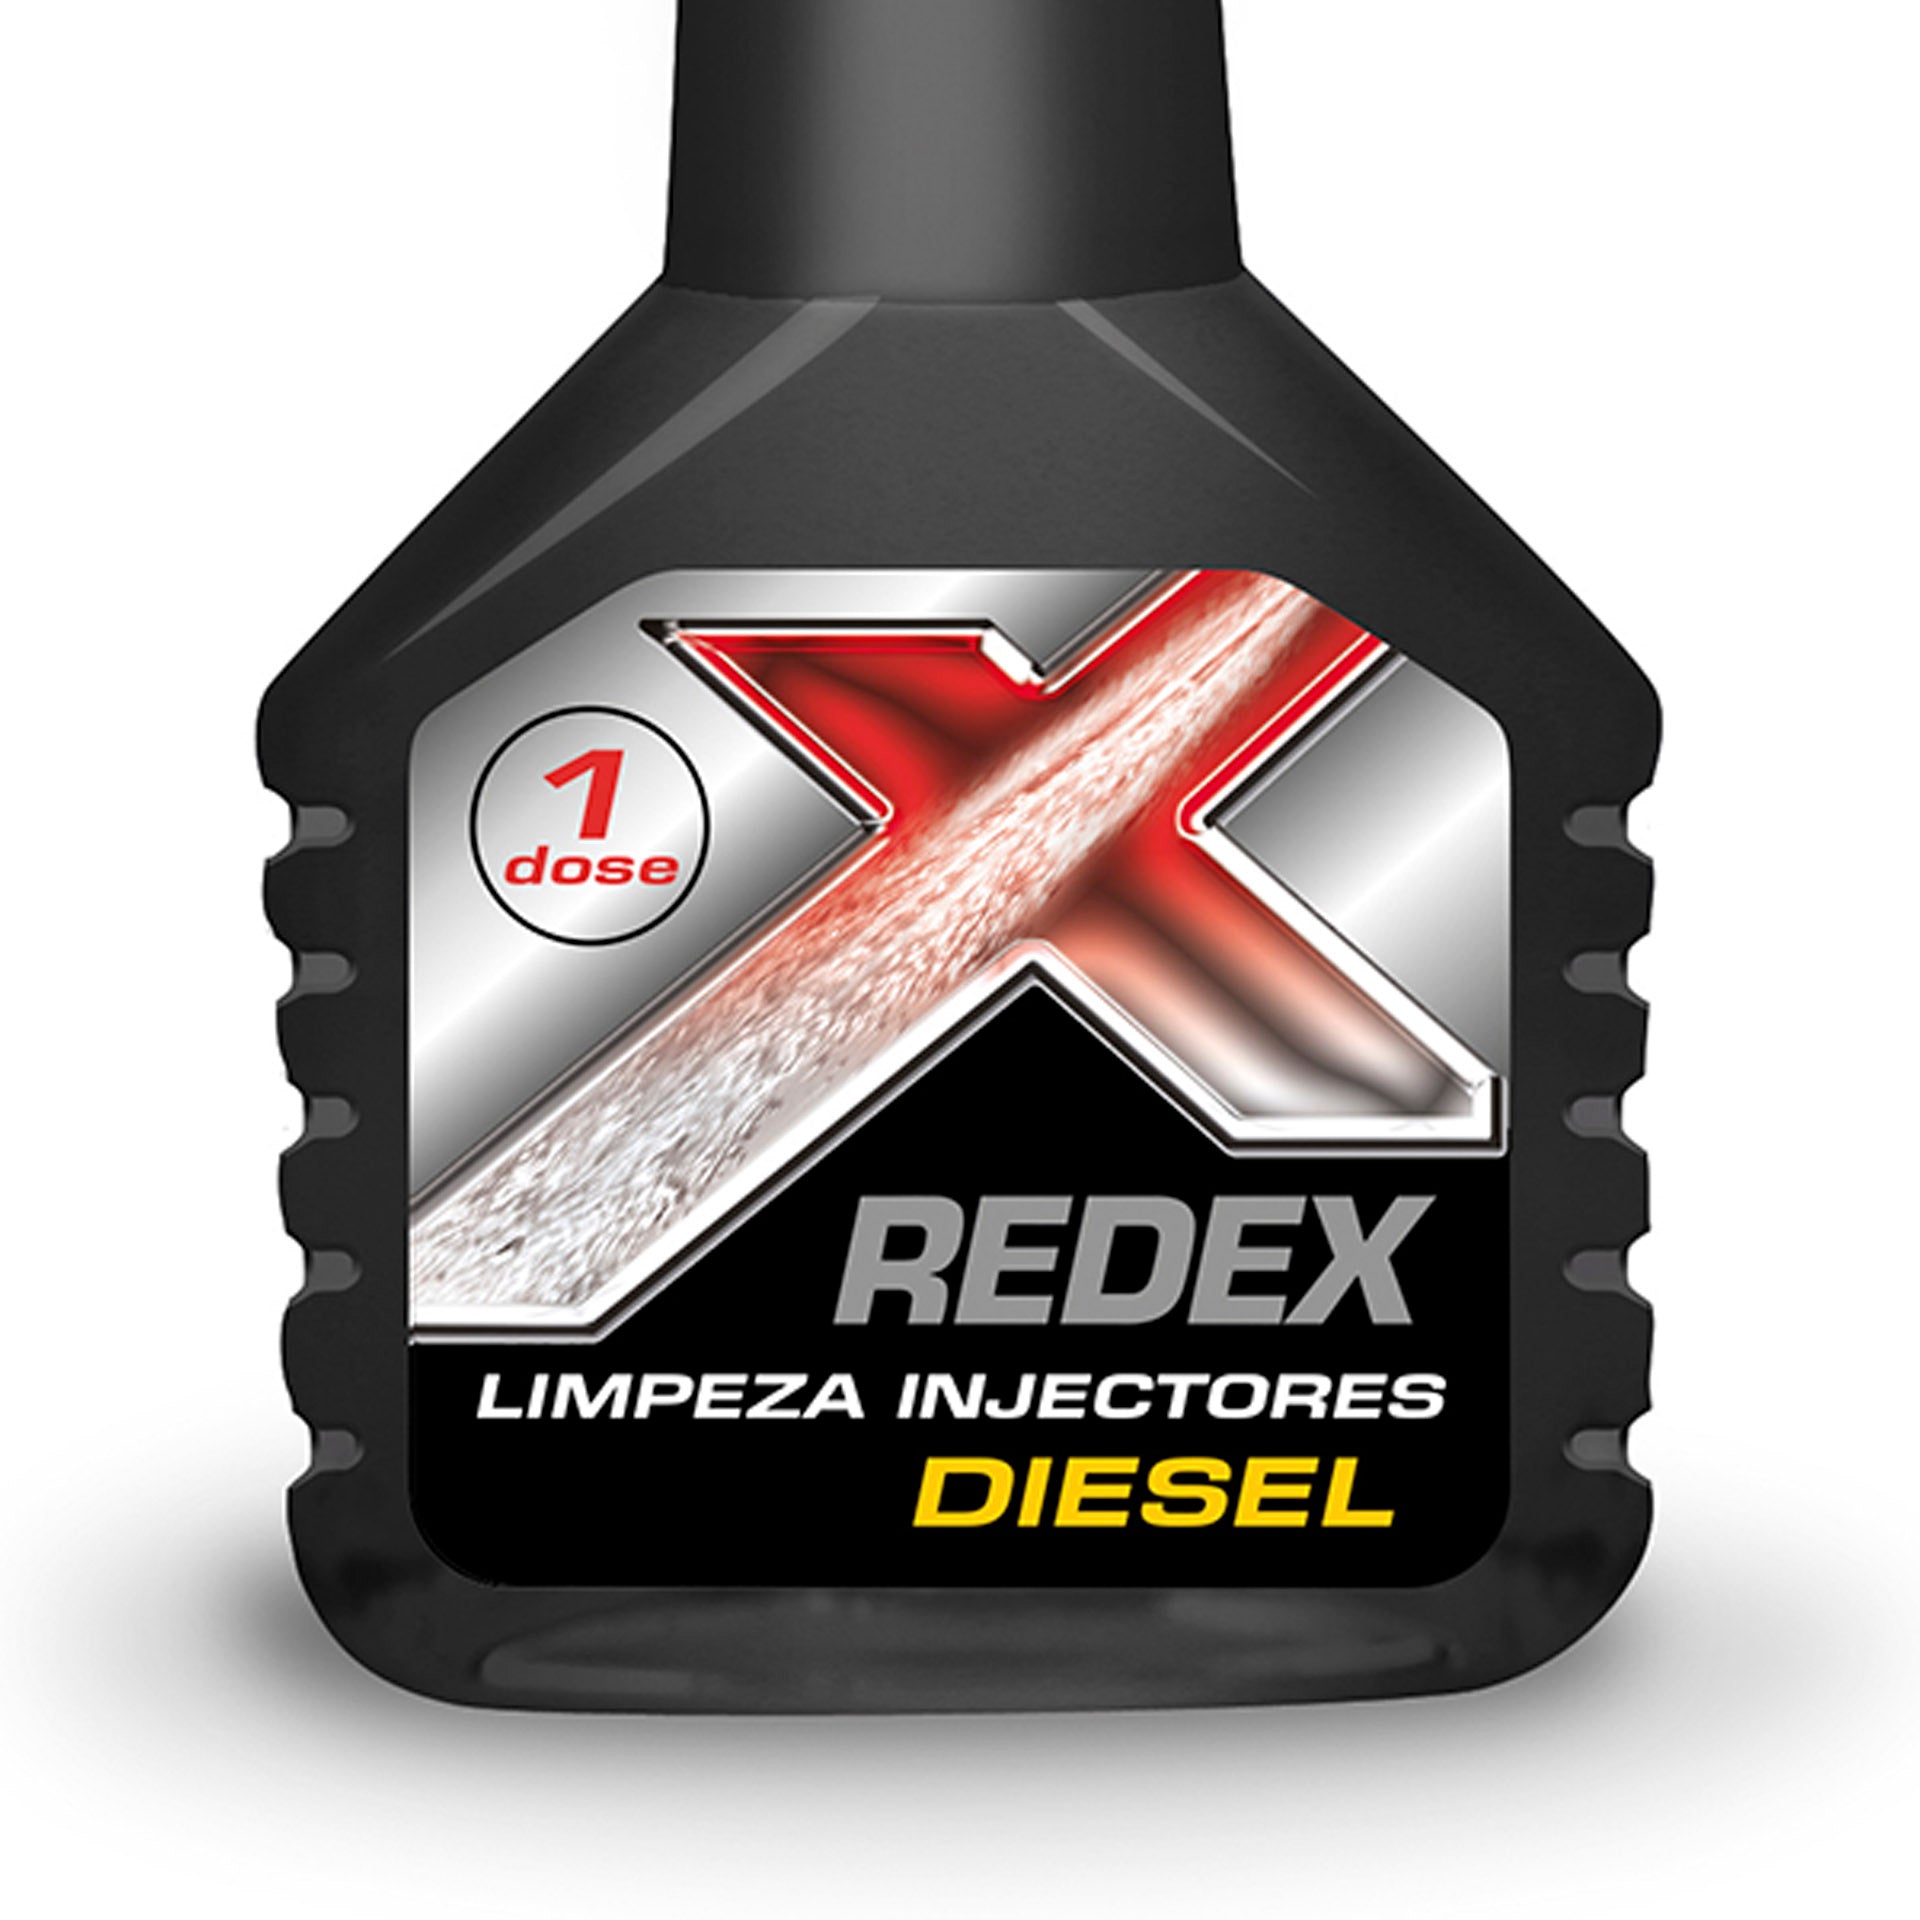 Redex Limpeza injectores diesel 250 ml